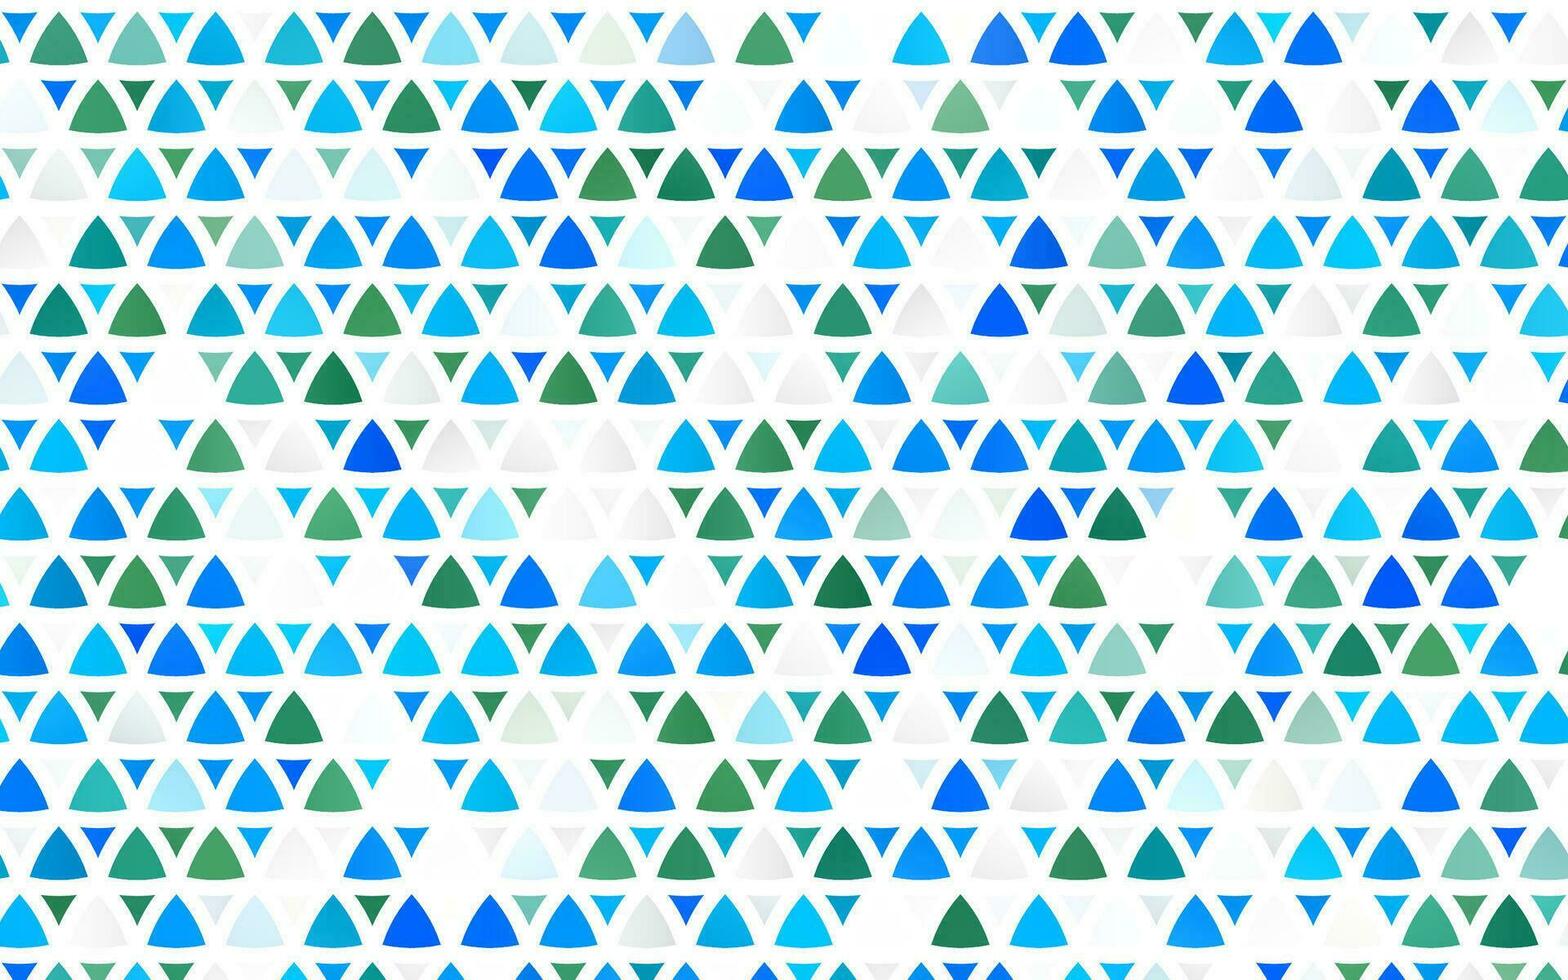 Plantilla transparente de vector azul claro, verde con cristales, triángulos.